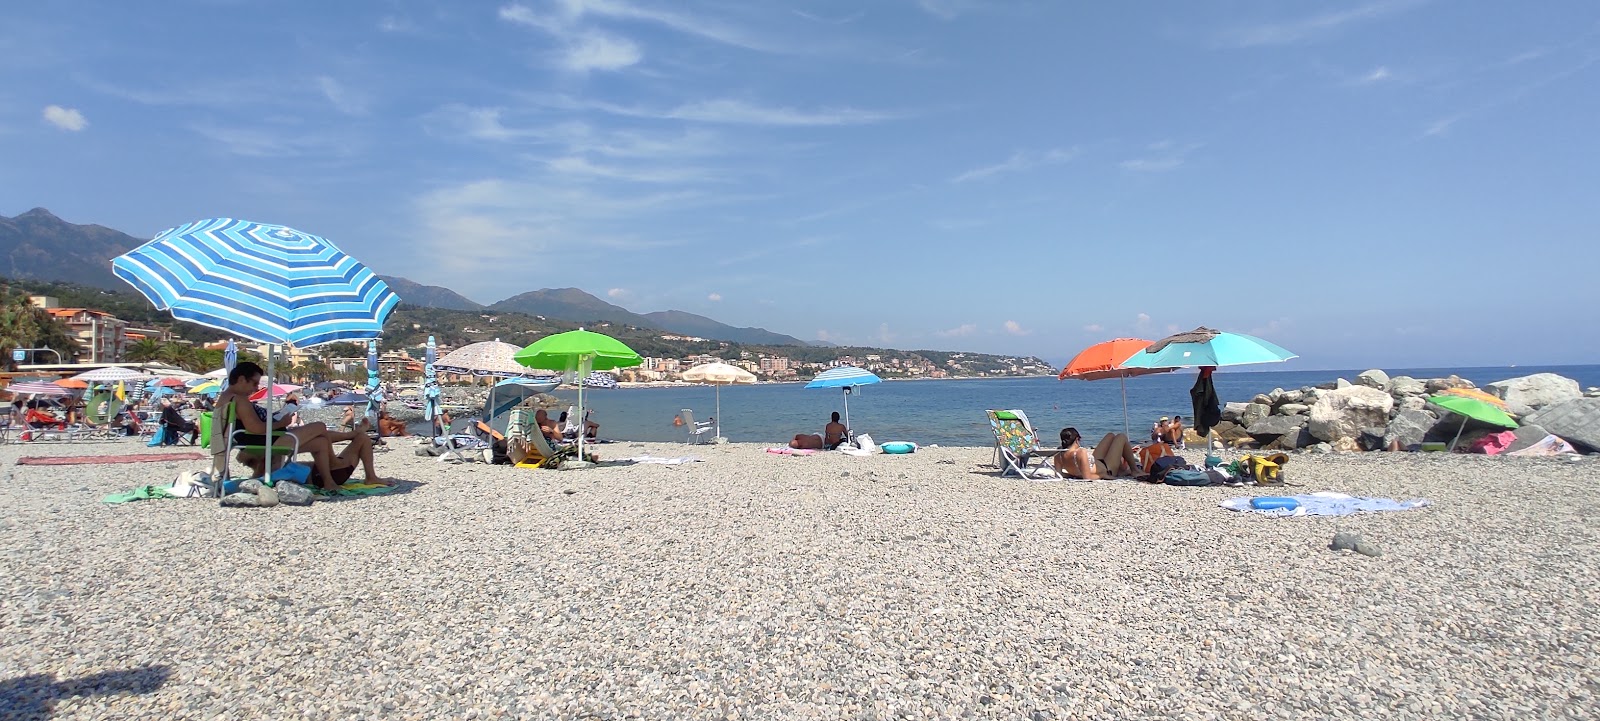 Foto de Spiaggia Libera Carretta Cogoleto con playa amplia